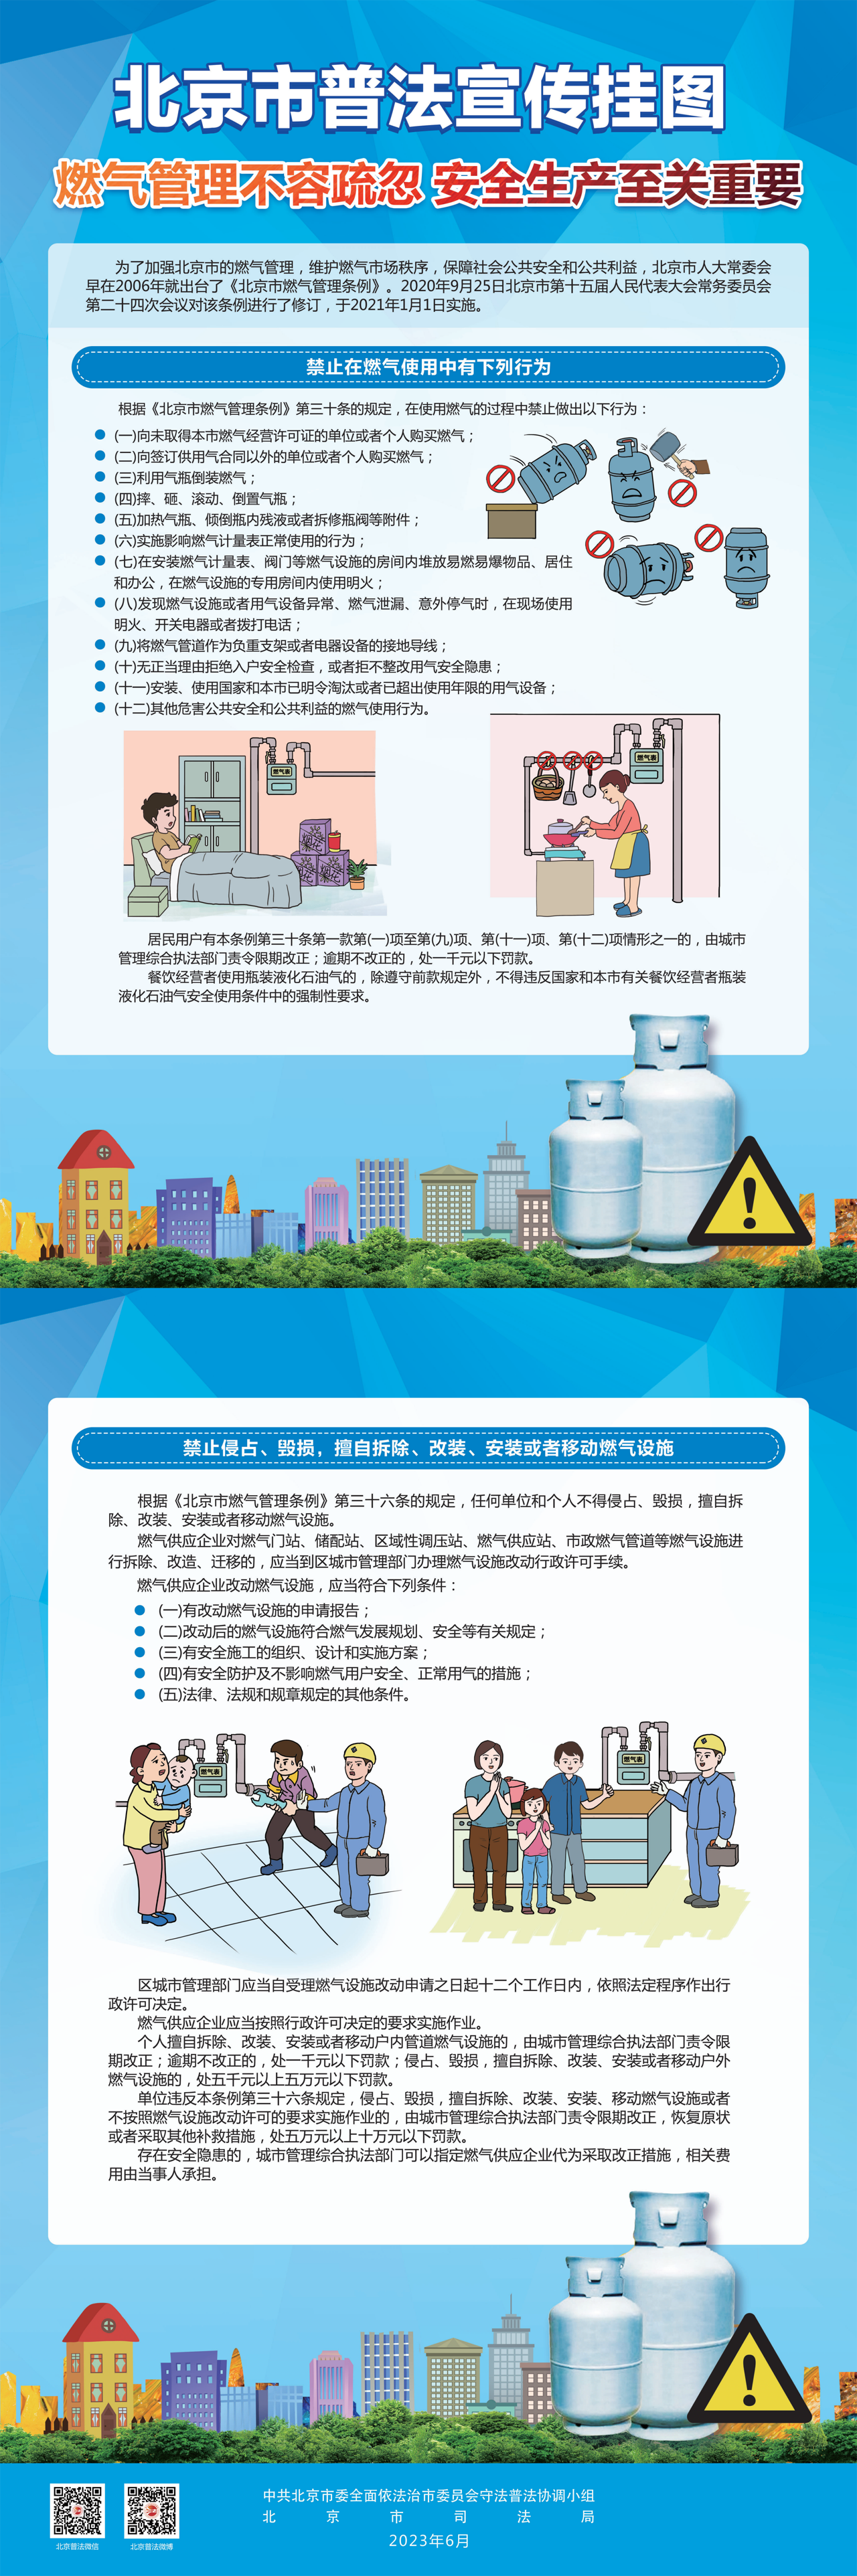 北京市普法宣传挂图第六期